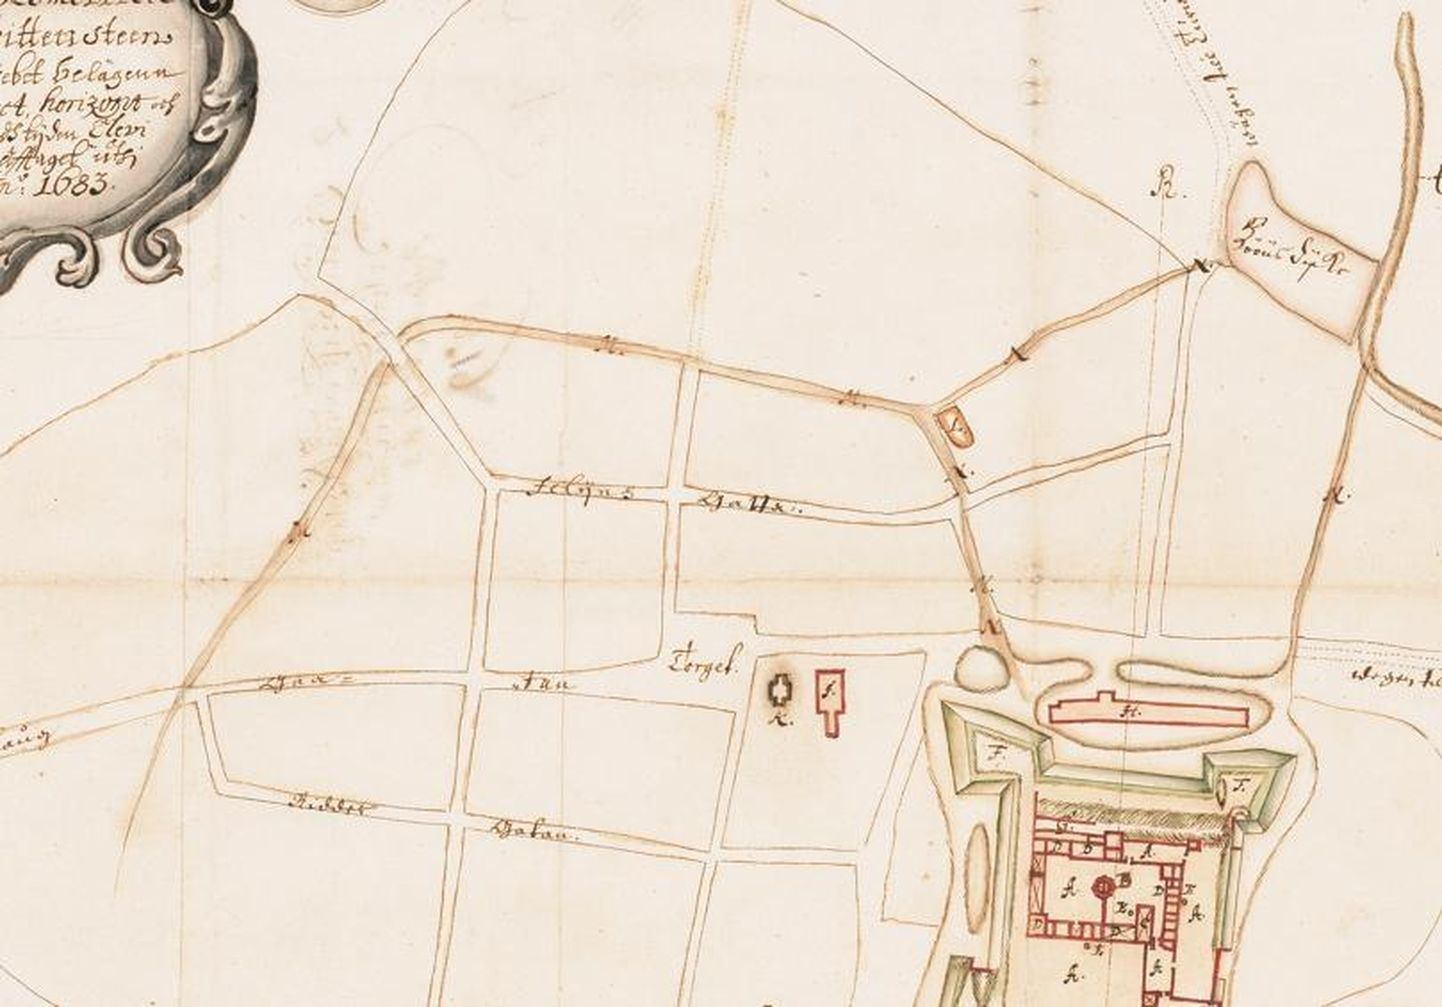 Rootsi kartograaf S. Waxelbergi Paide kaart aastast 1683, kus on näidatud tänavate võrk ja osaliselt ka linna kunagine vallikraav. Näeme, et kraav kulges Põllu tänava juurest ja Vainu tänavaga sel seos puudub.